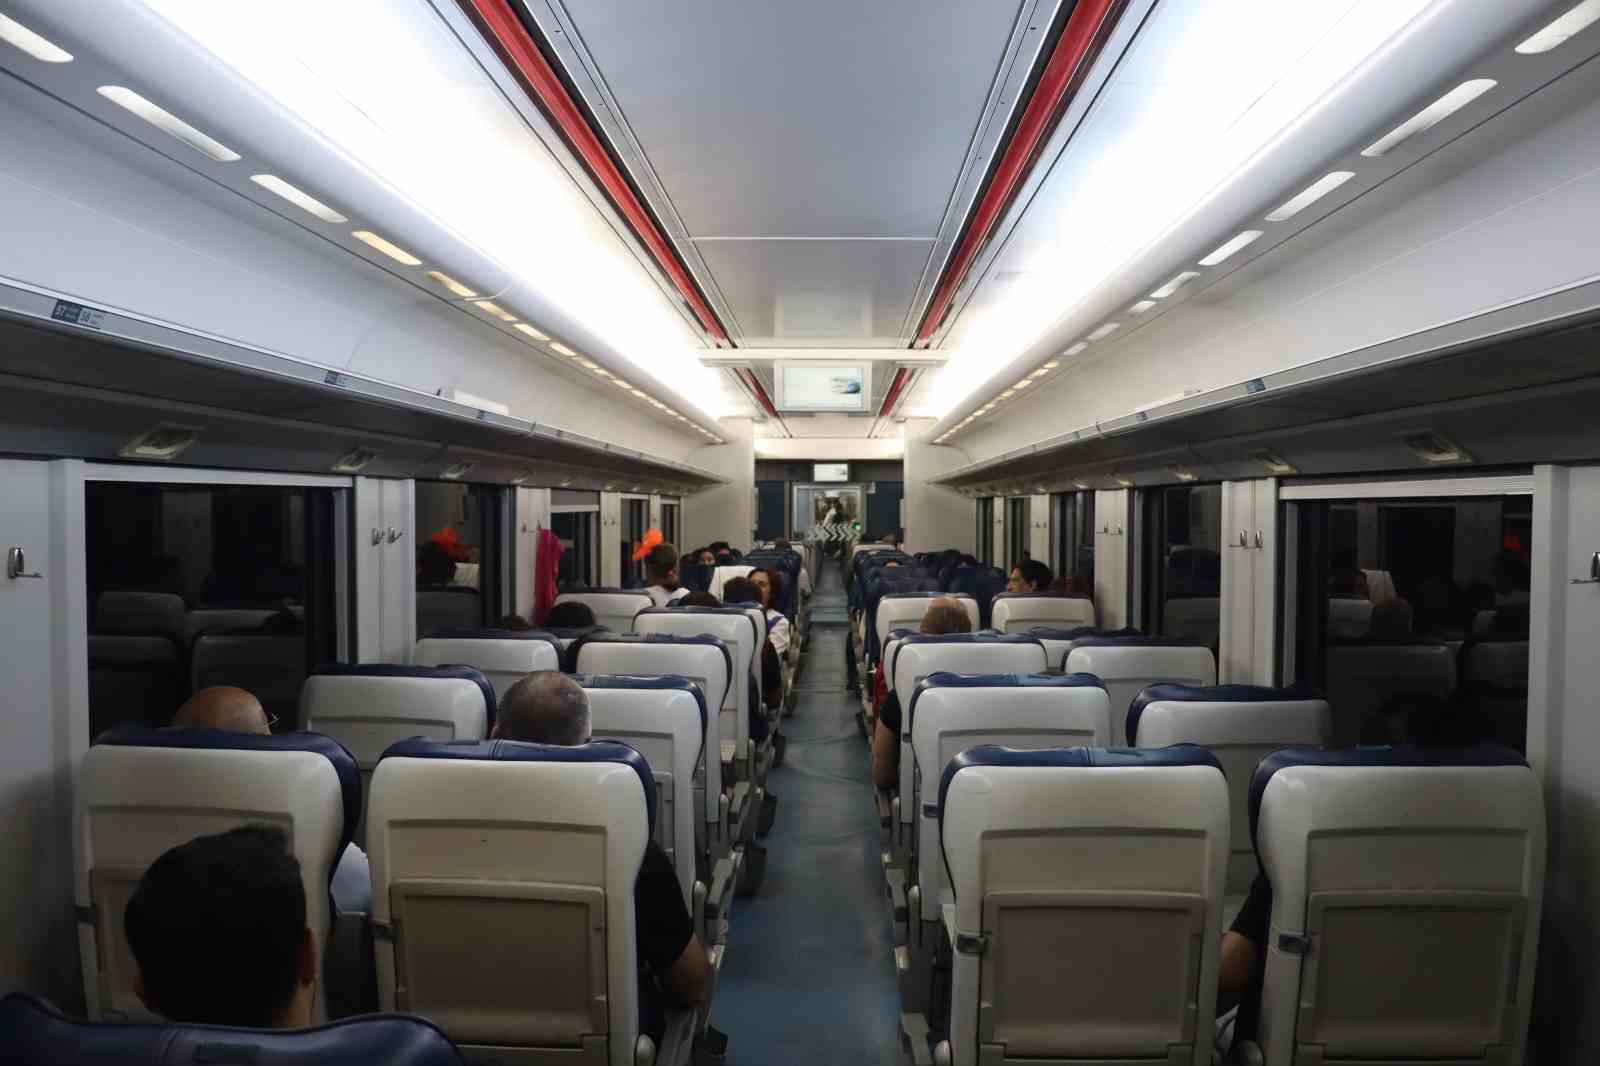 Adana ve Mersin’den Belemedik’e turistik tren seferleri başlayacak
